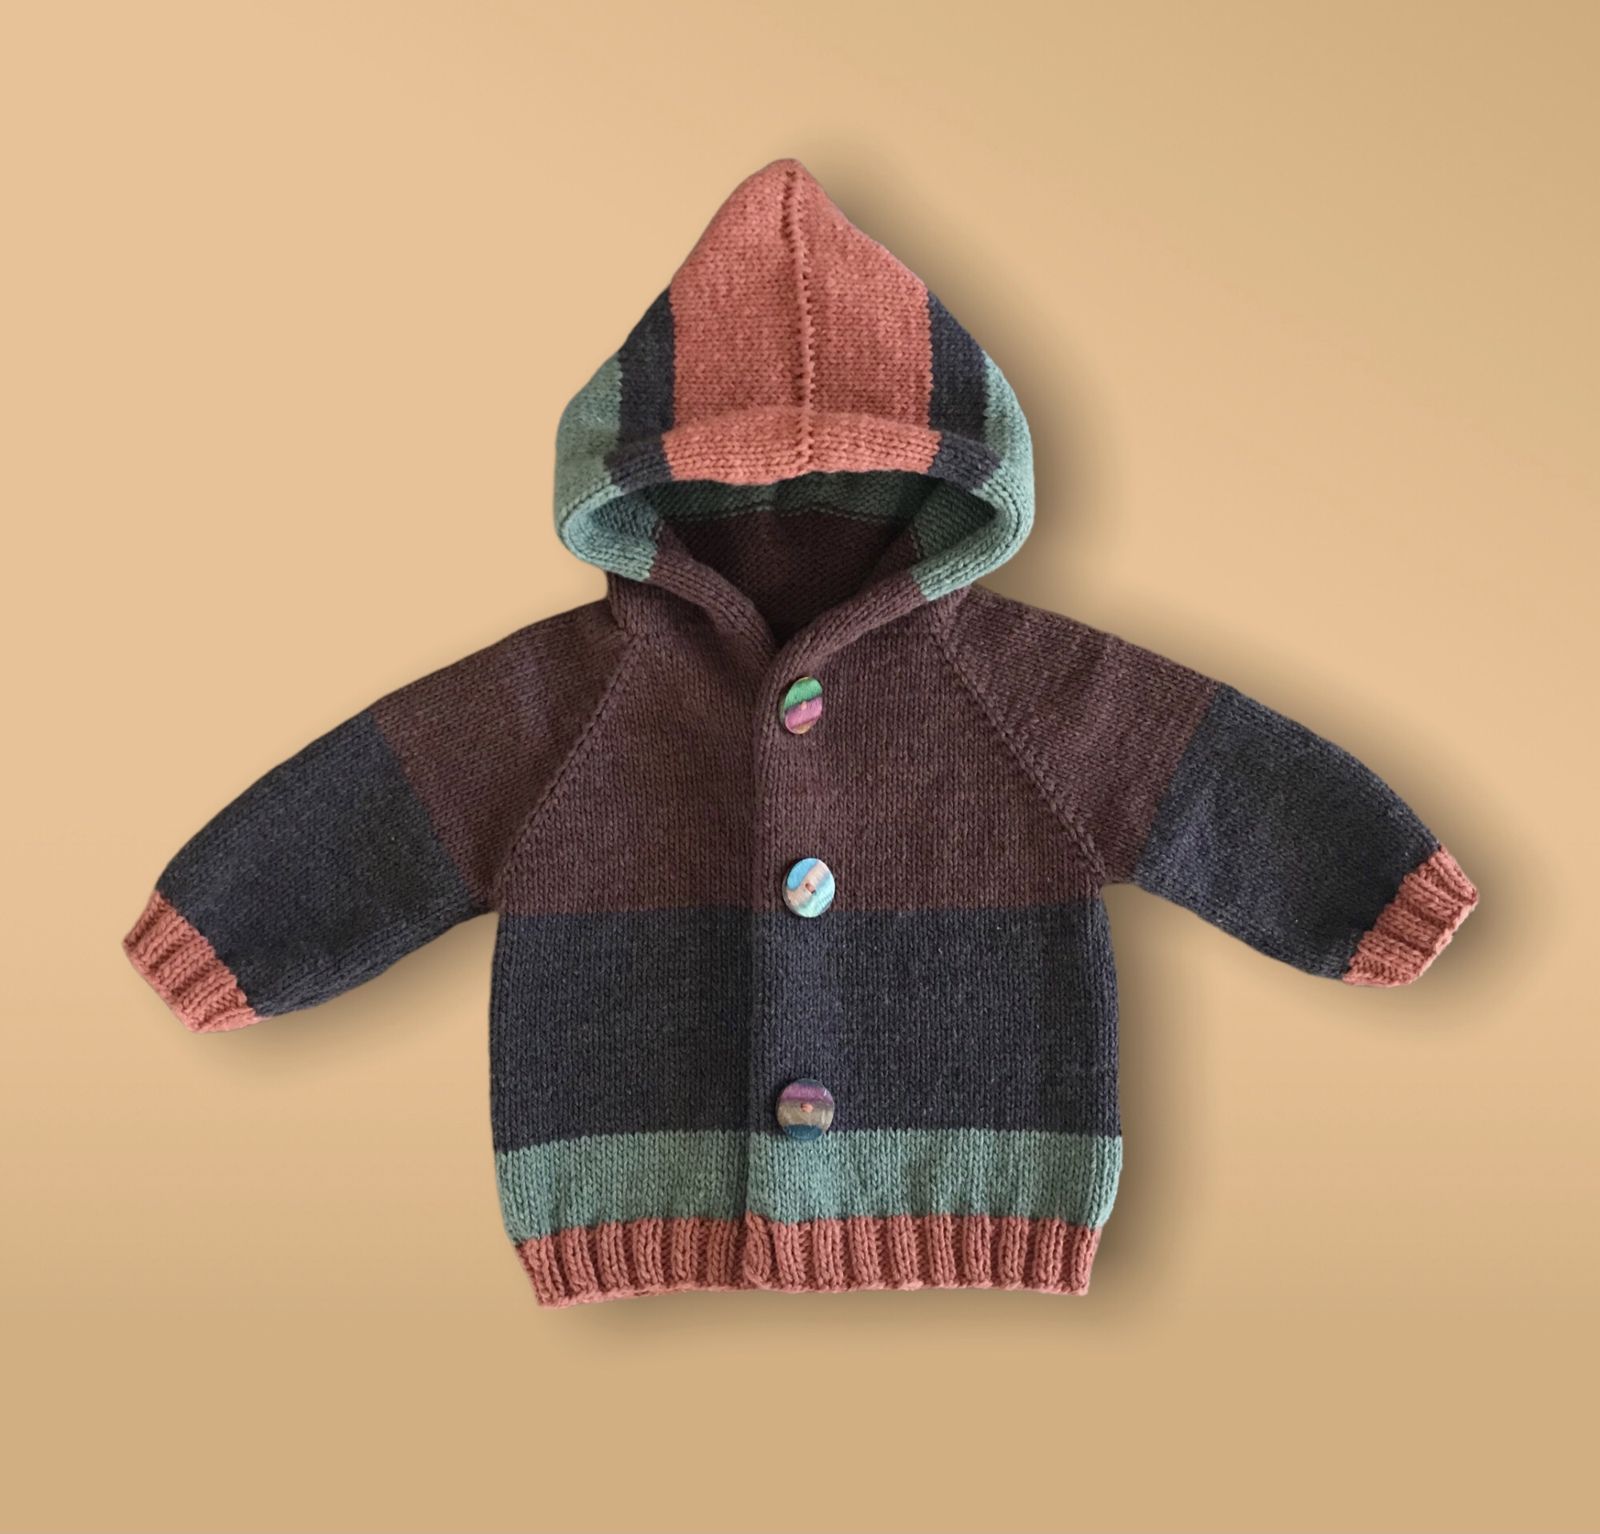 Modèles manteaux bébé tricot facile 